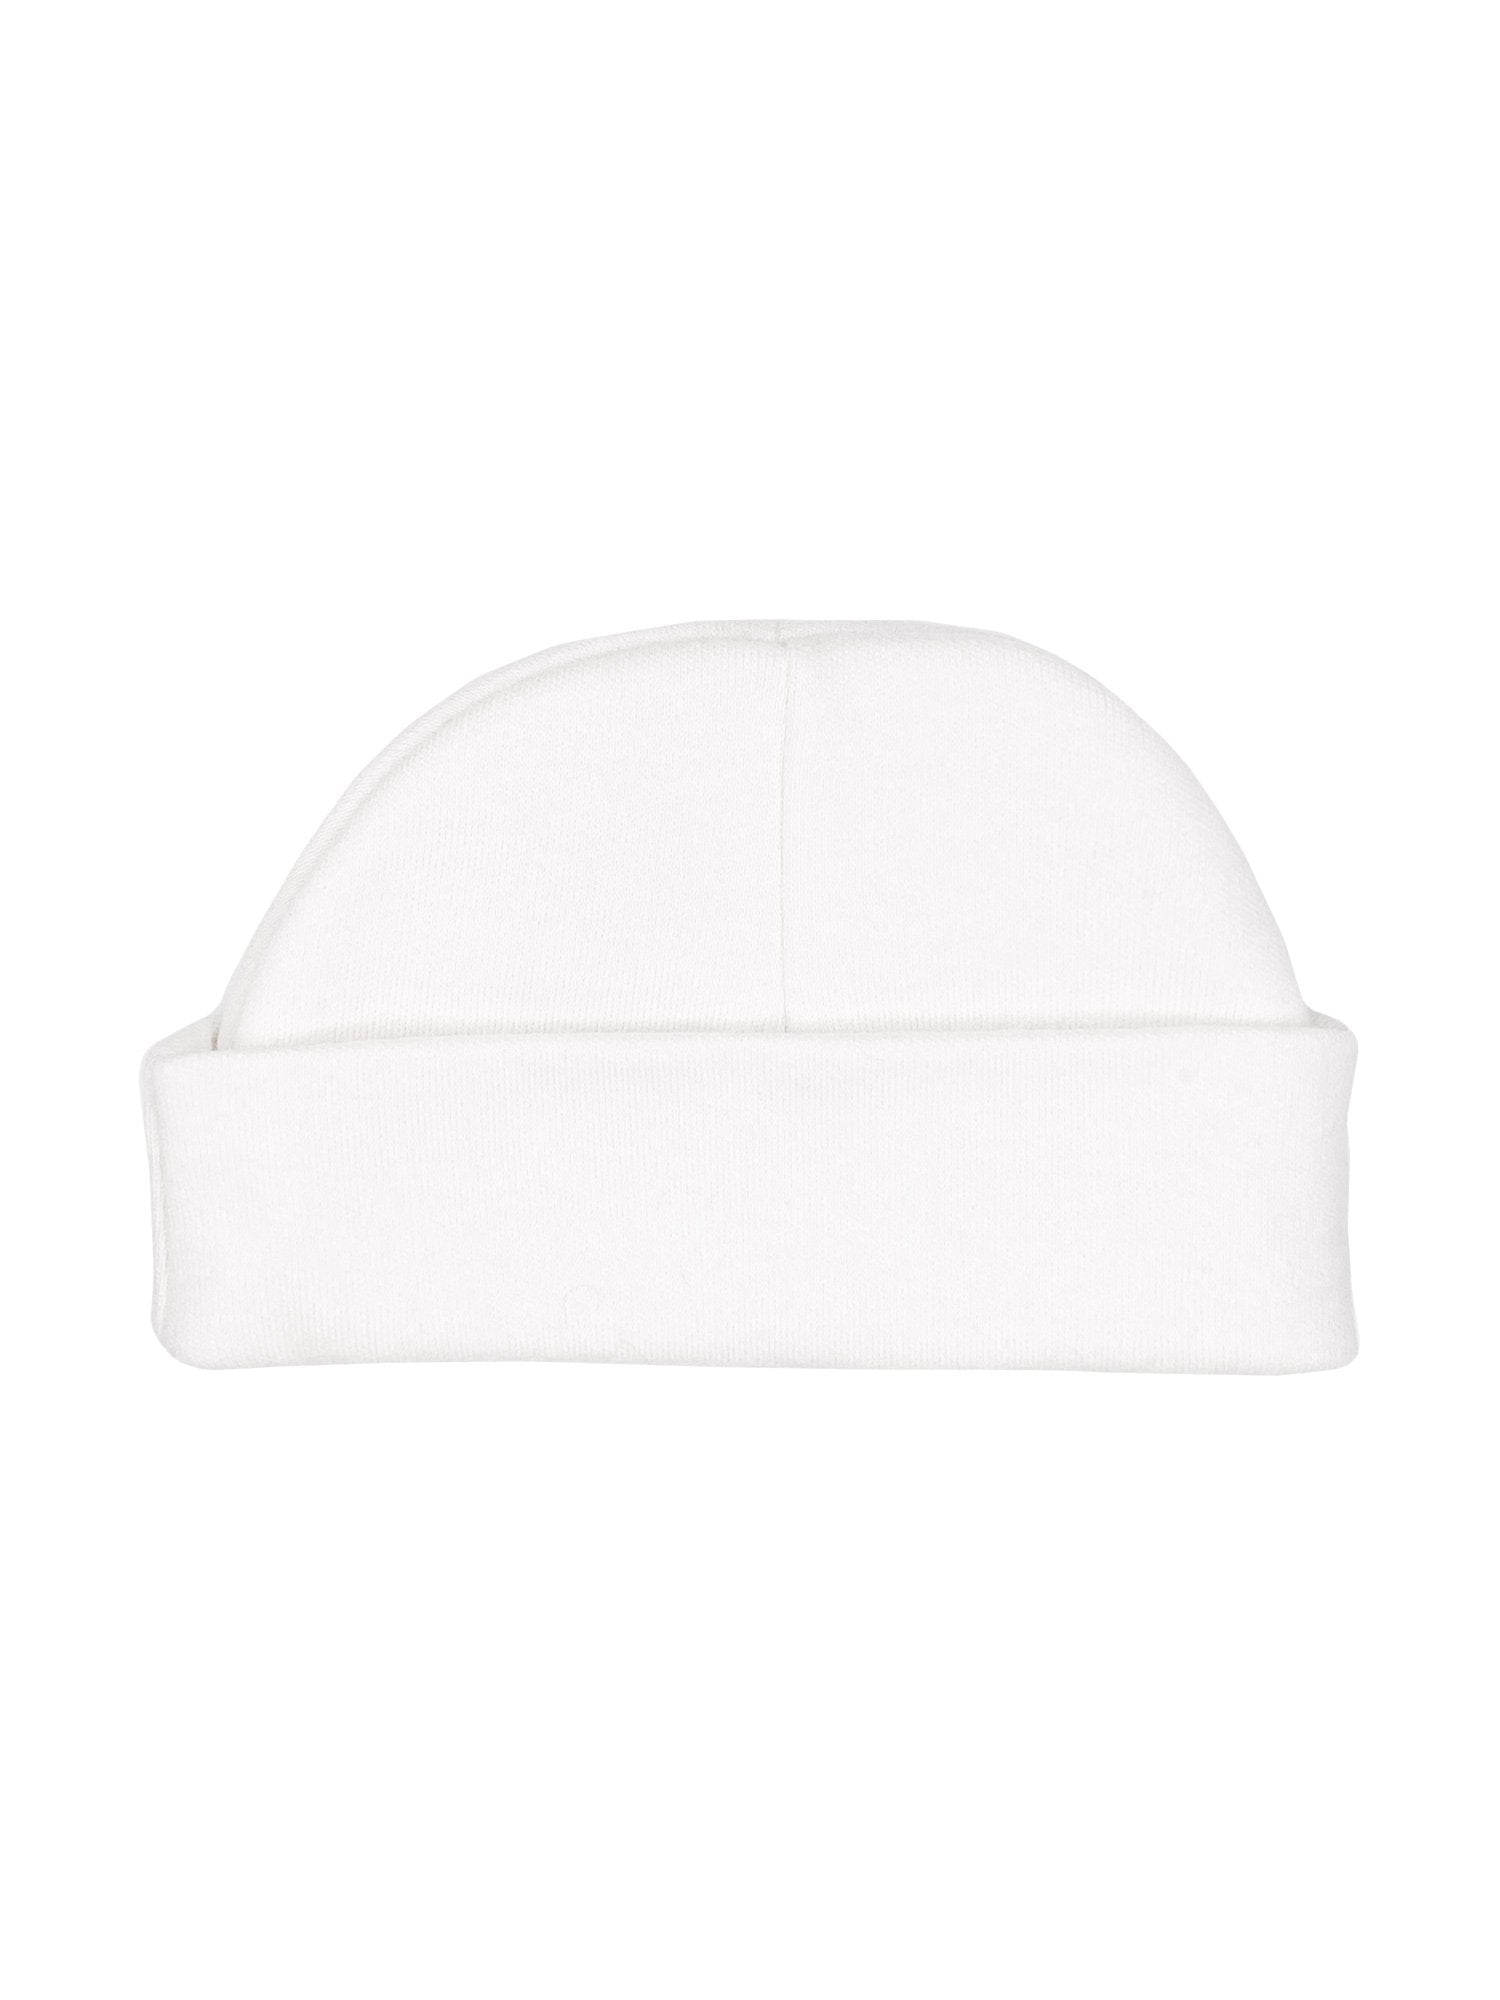 White Round Premature Baby Hat Hat Soft Touch 